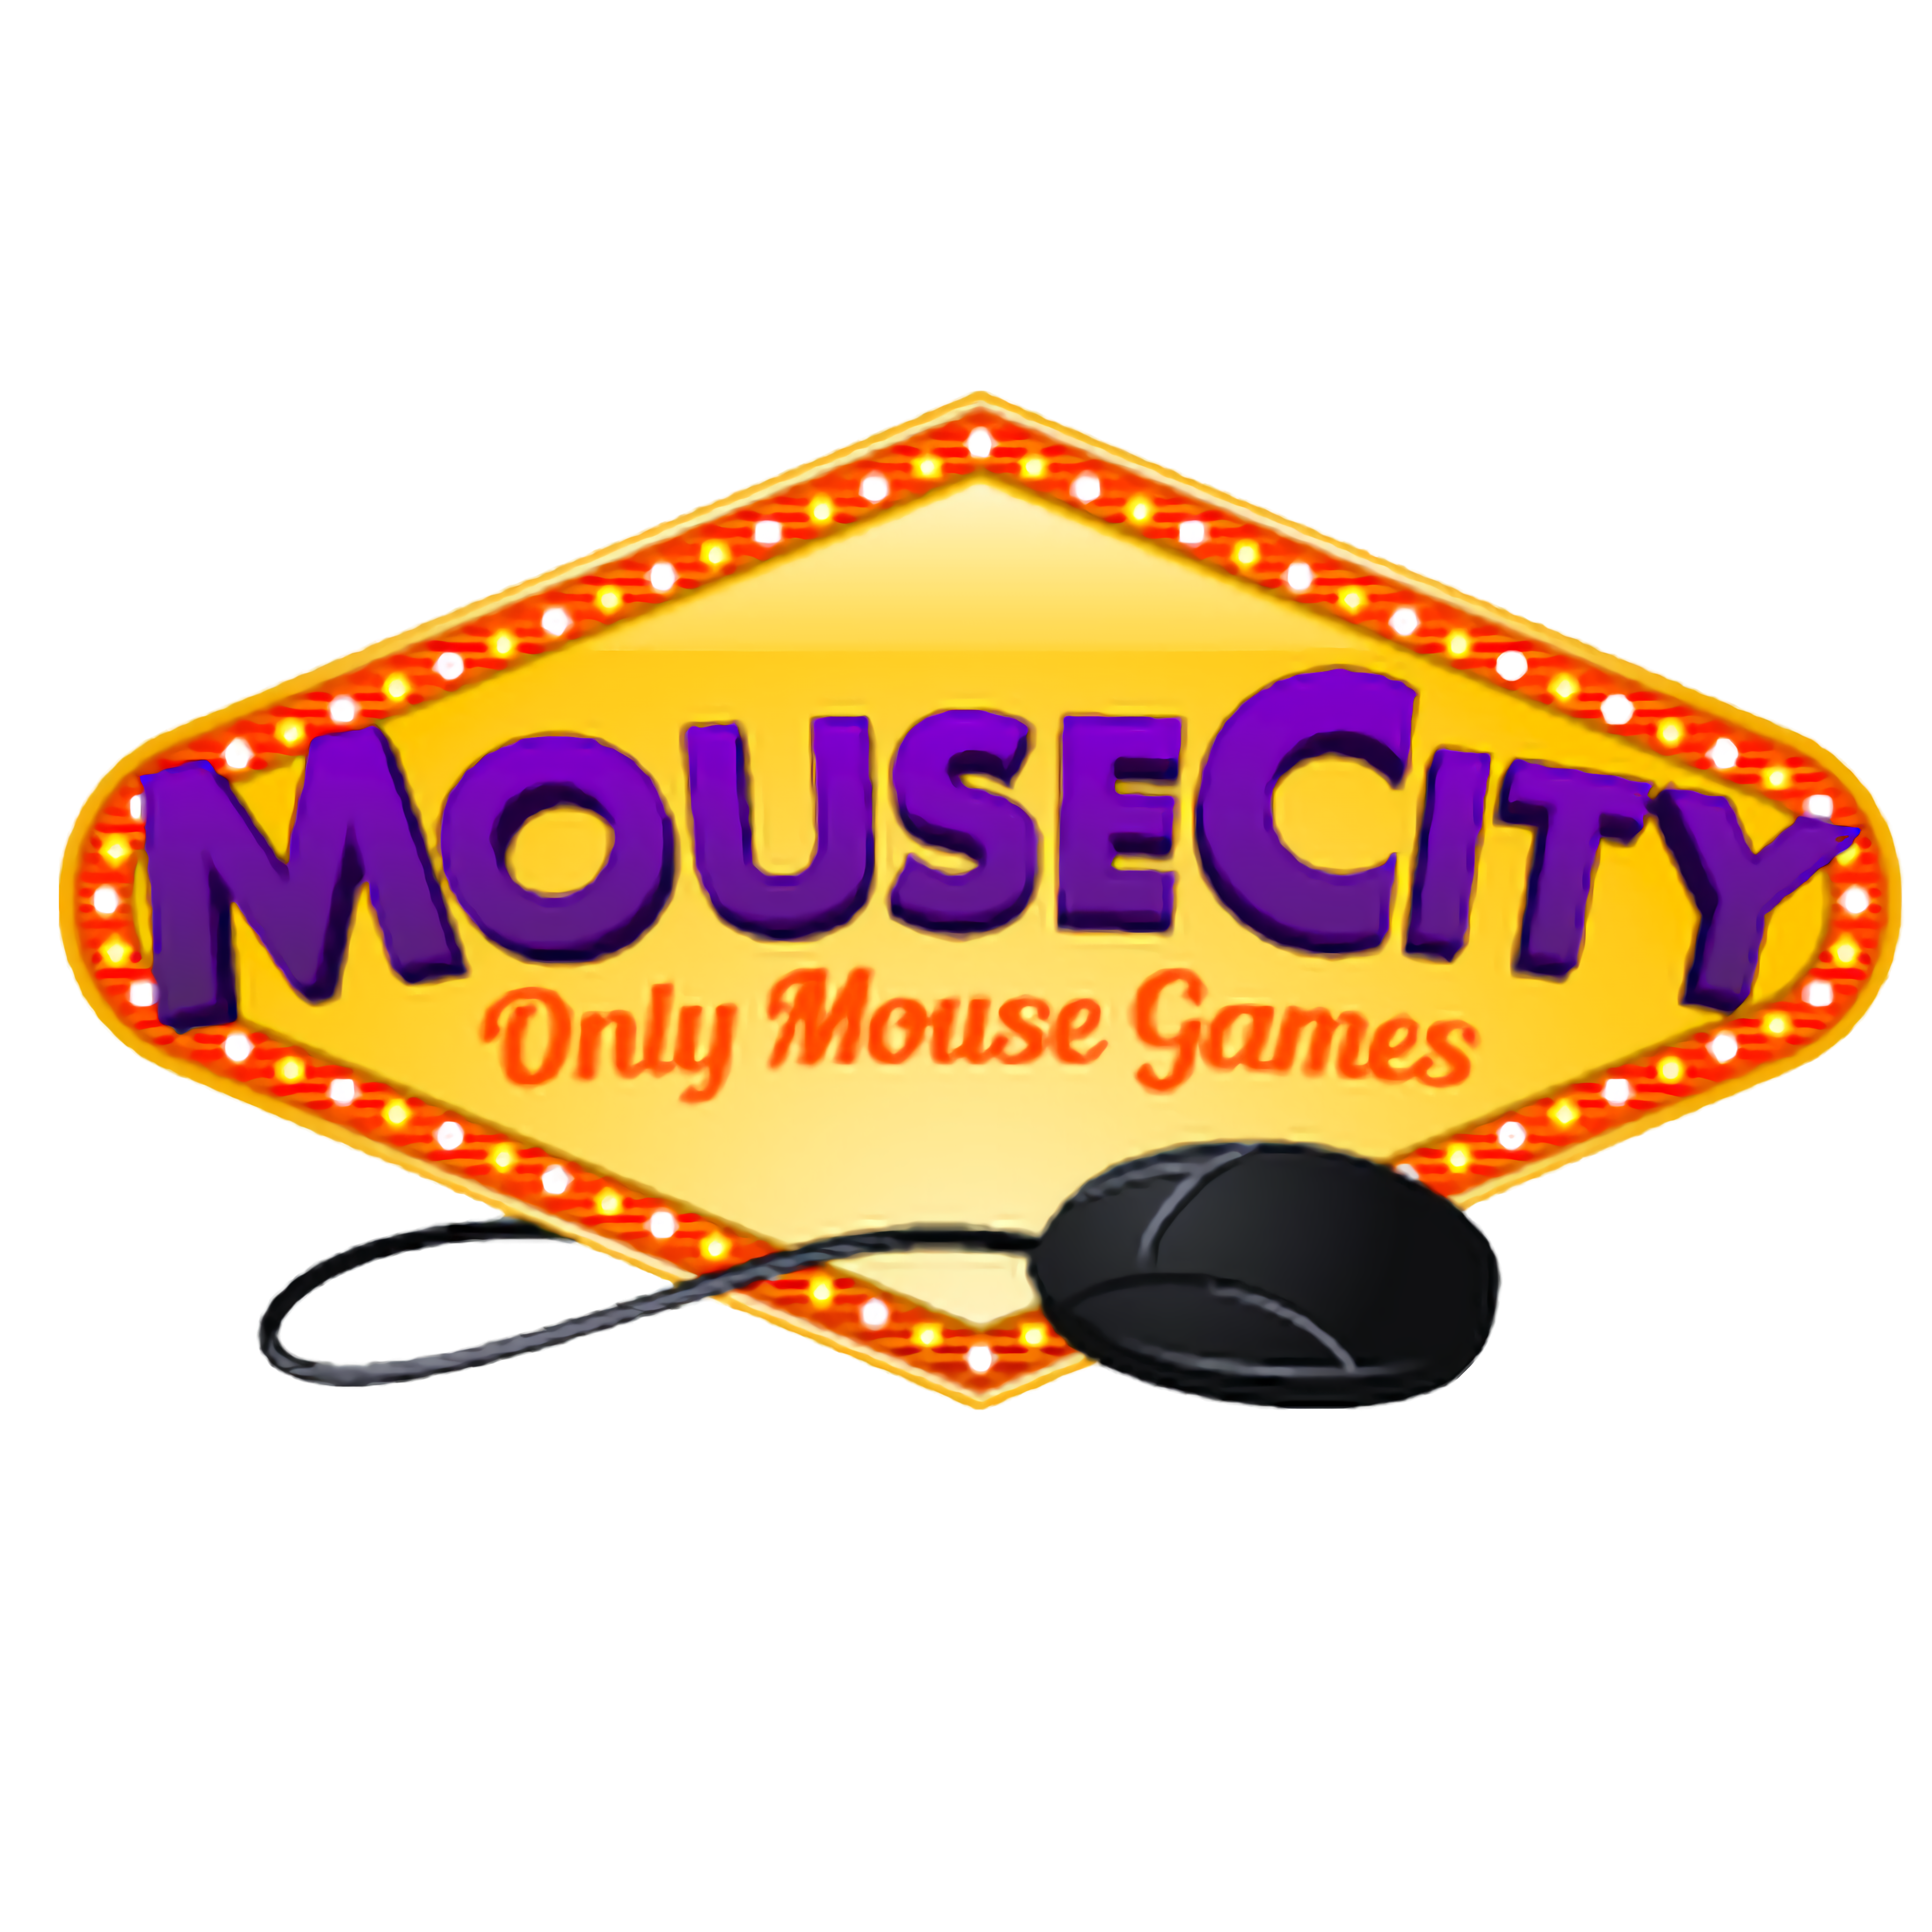 Juegos de Mousecity